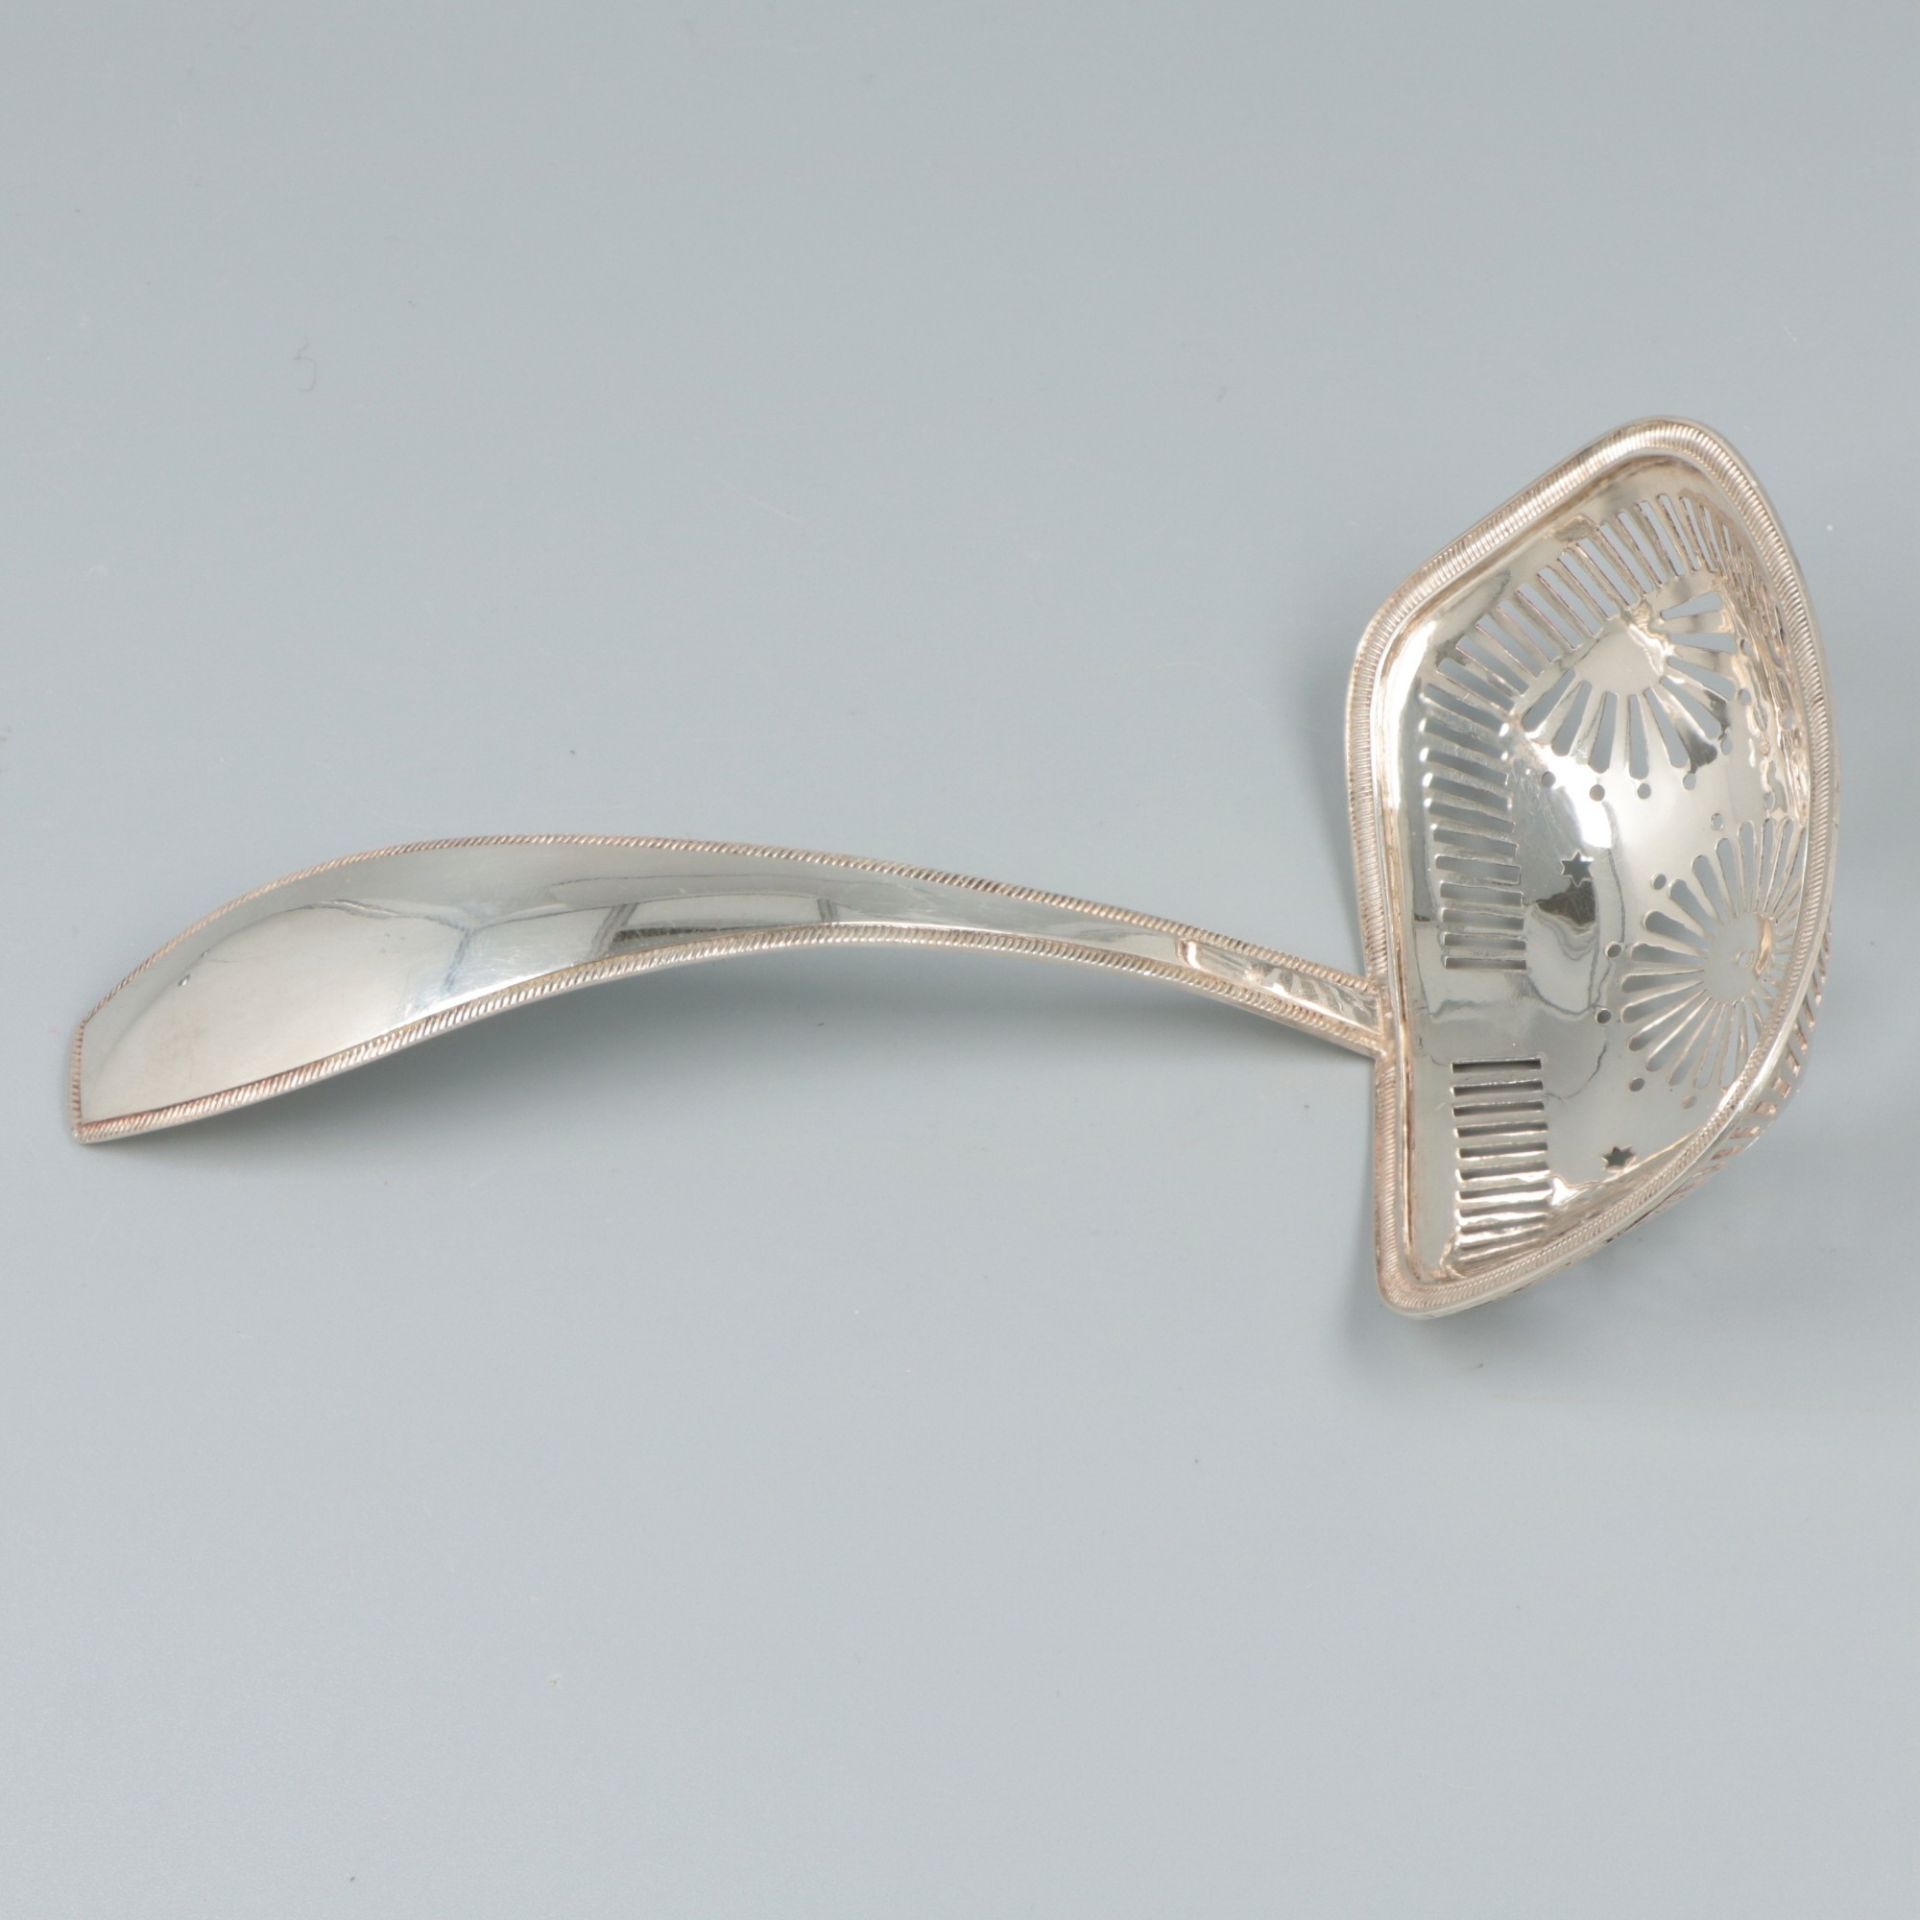 Sifter spoon (Amsterdam, Jacob van Wijk, 1832) silver. - Bild 4 aus 6